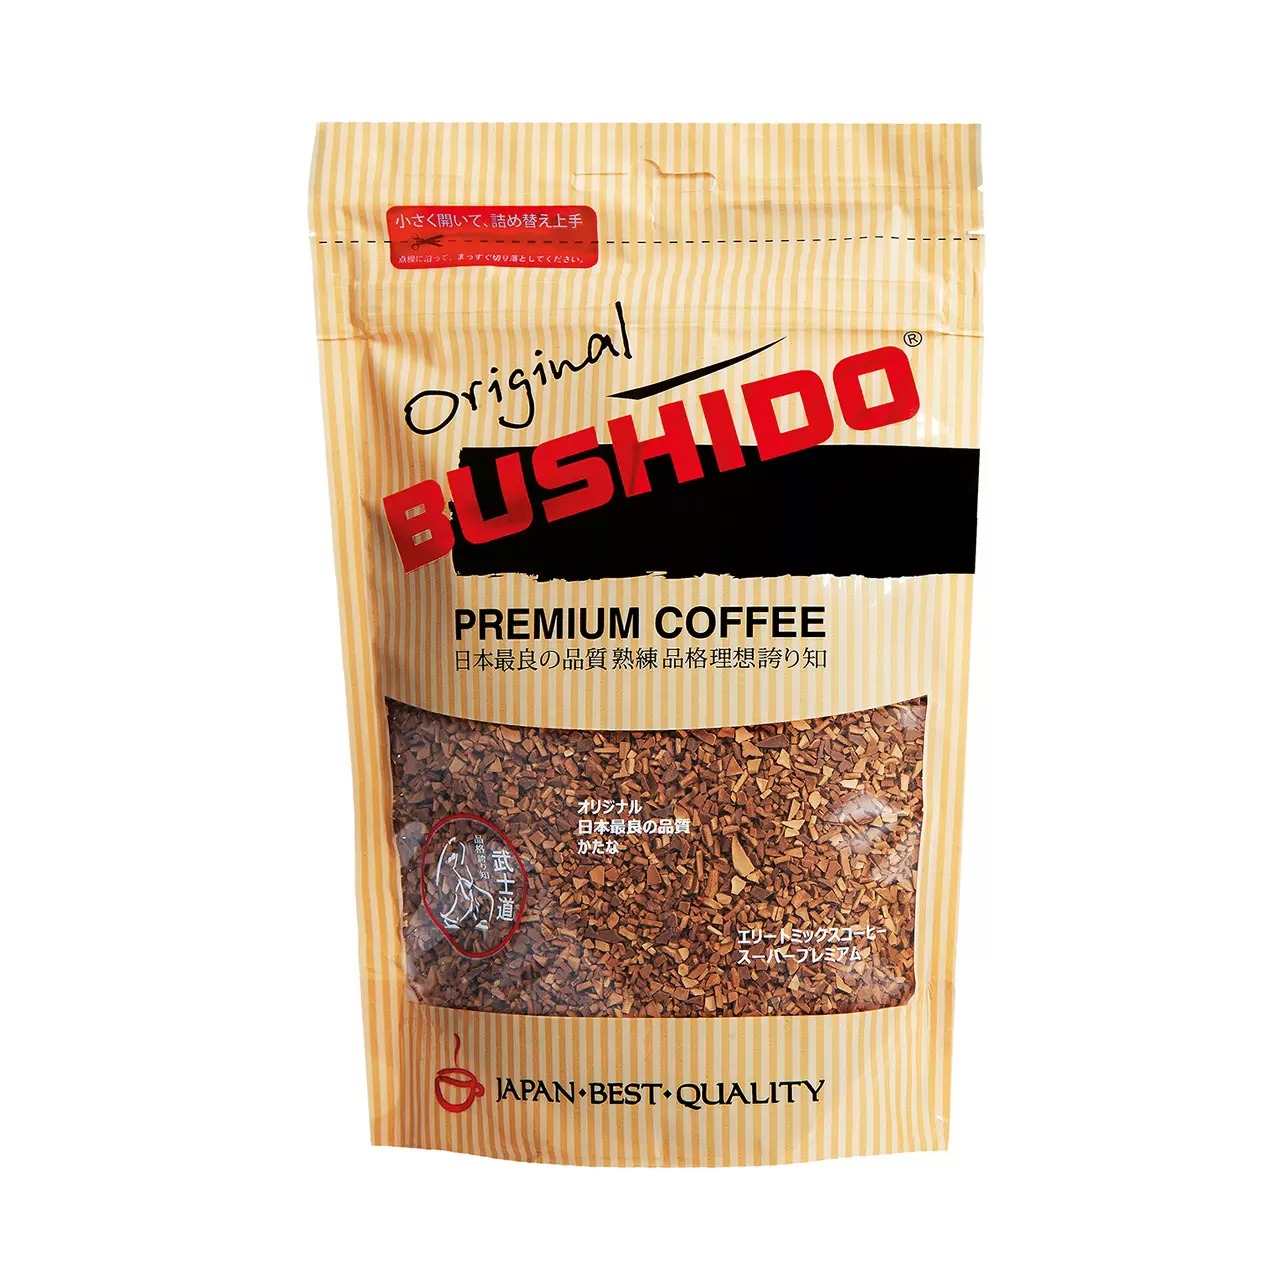 Кофе BUSHIDO Original сублимированный, 75 г кофе растворимый bushido original сублимированный 100 г